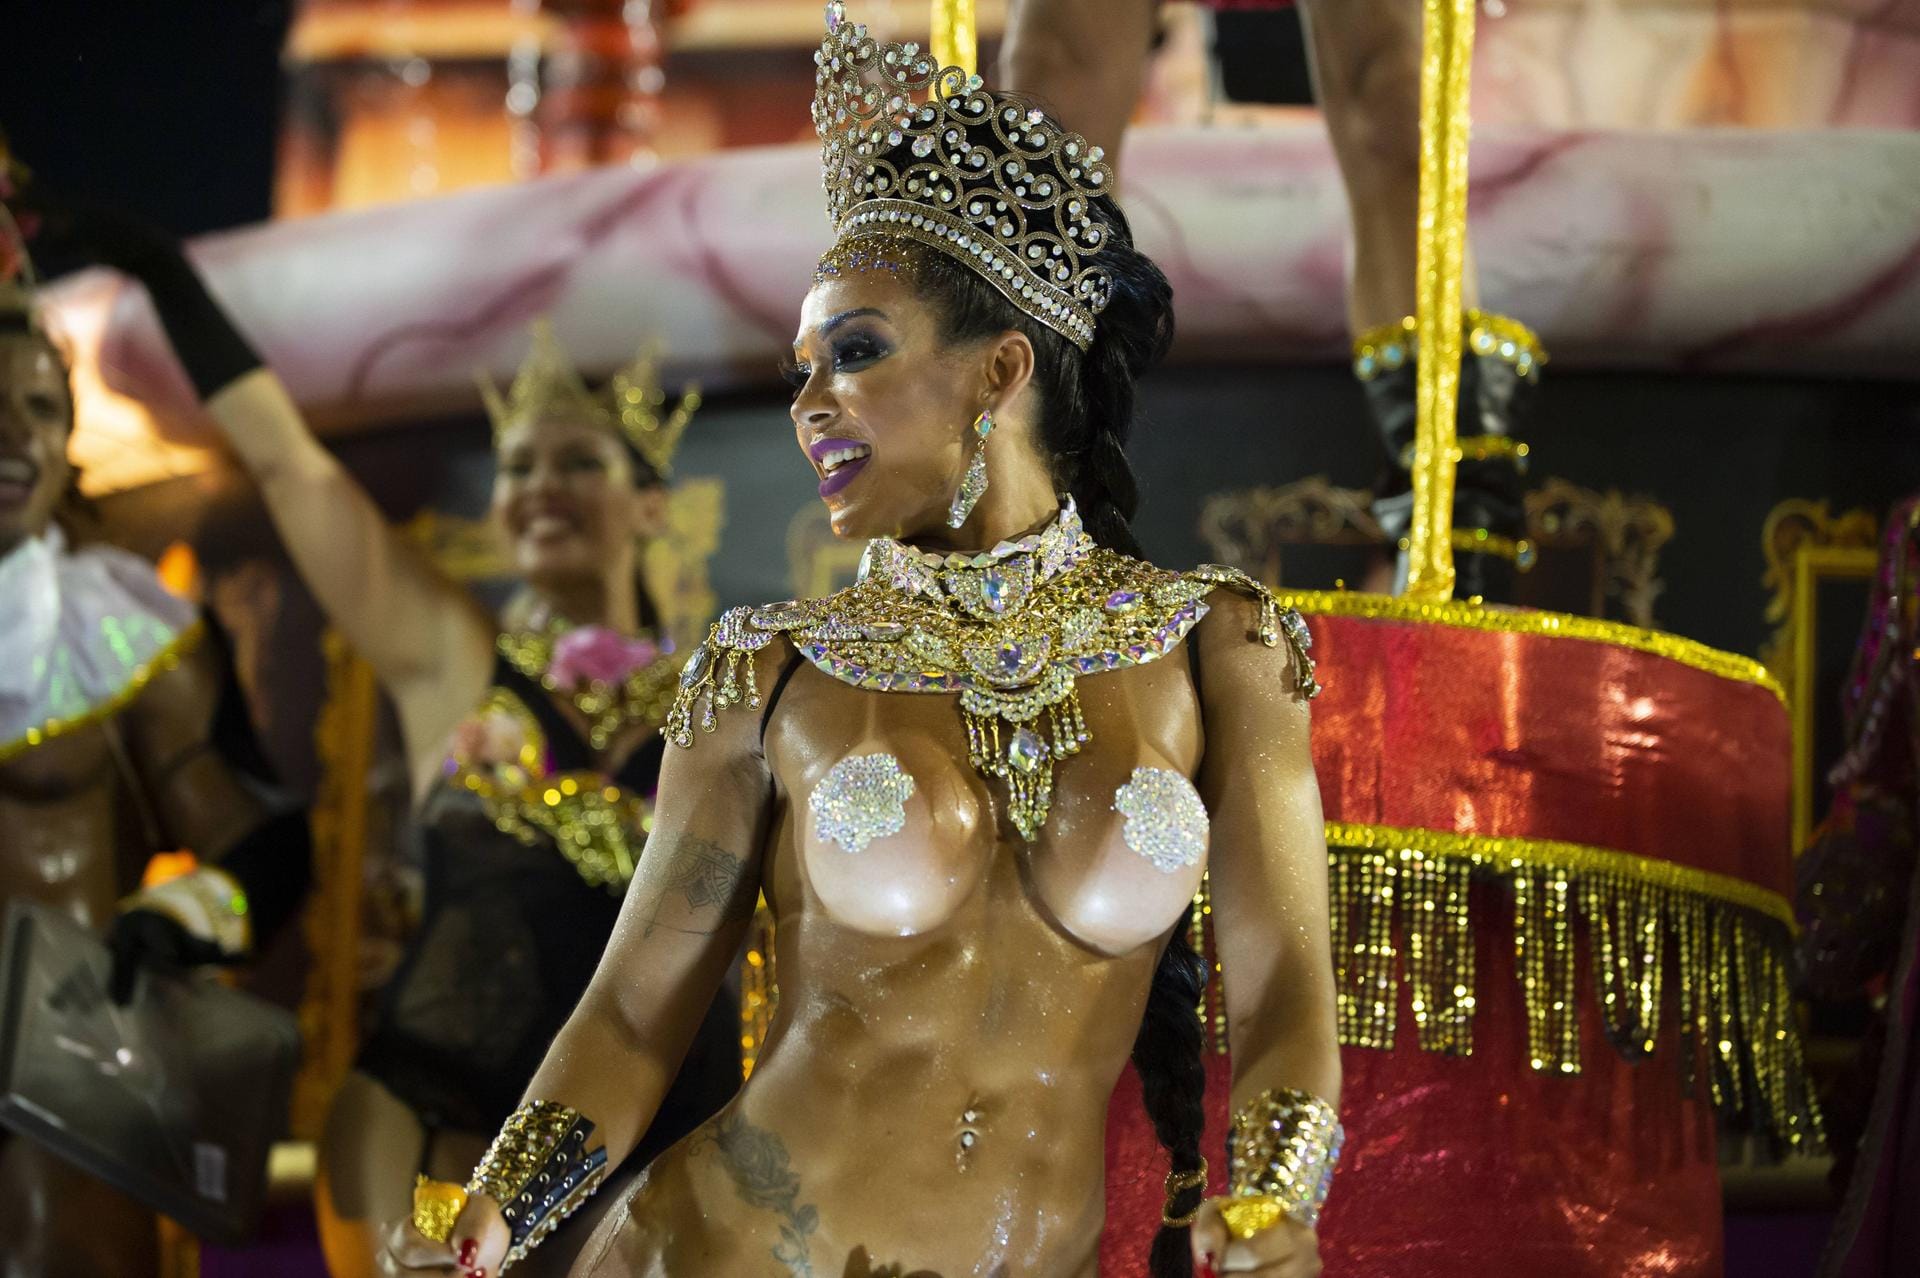 Karneval in Rio de Janeiro: Im Sambodromo paradieren die Tanzgruppen und wetteifern um die besten Wagen, Lieder und Choreografien.